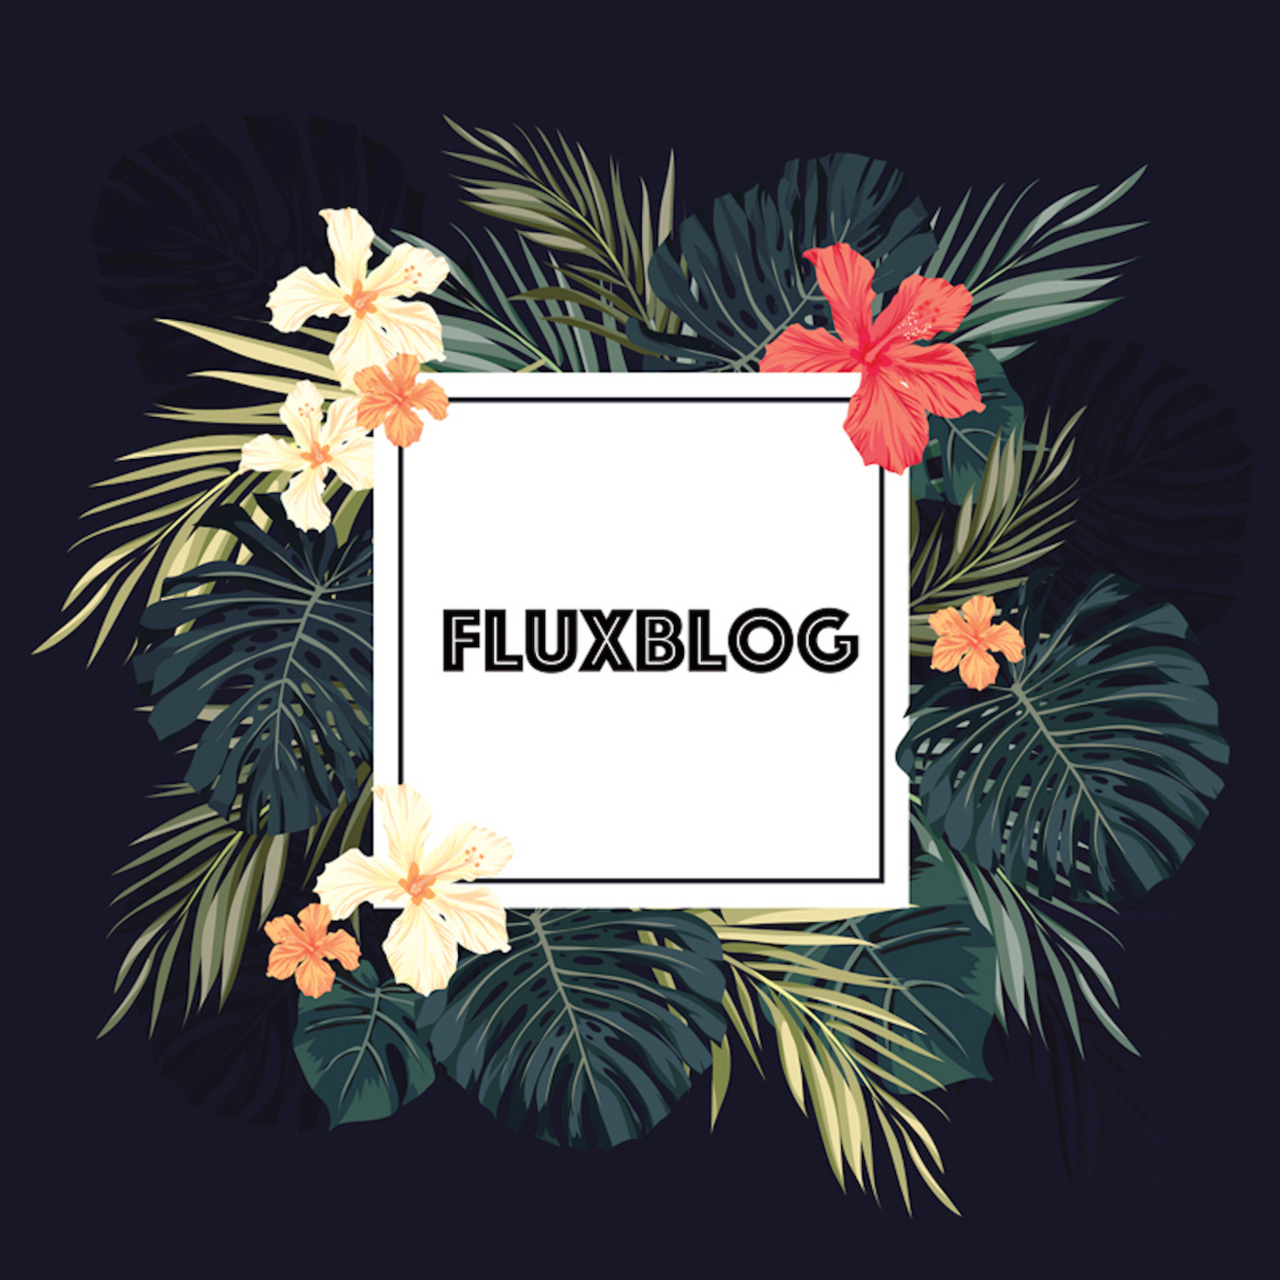 Fluxblog